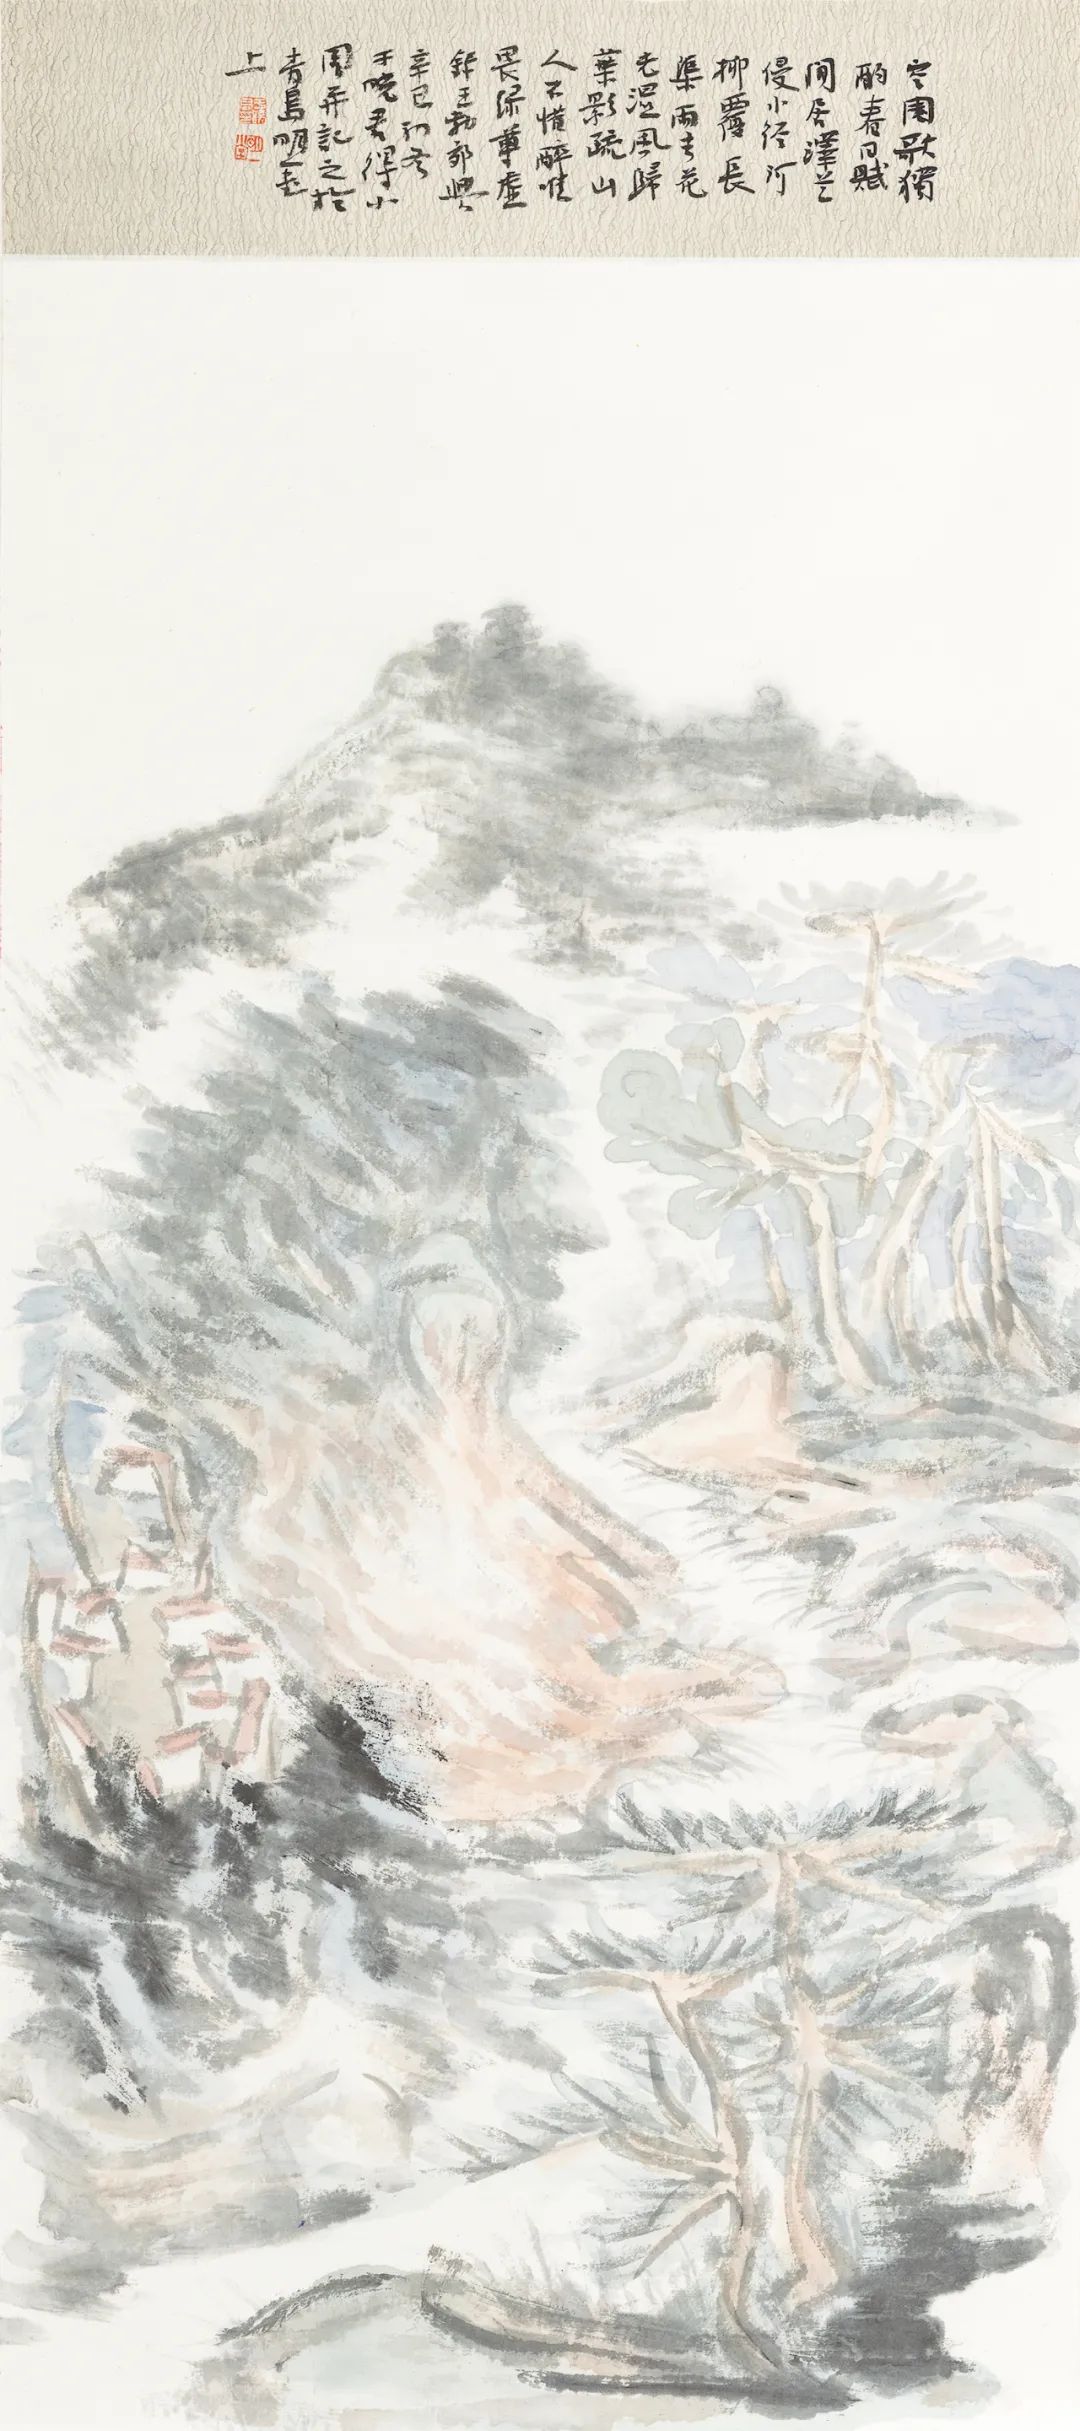 错置与解构——纵观著名画家于晓君的山水画创作